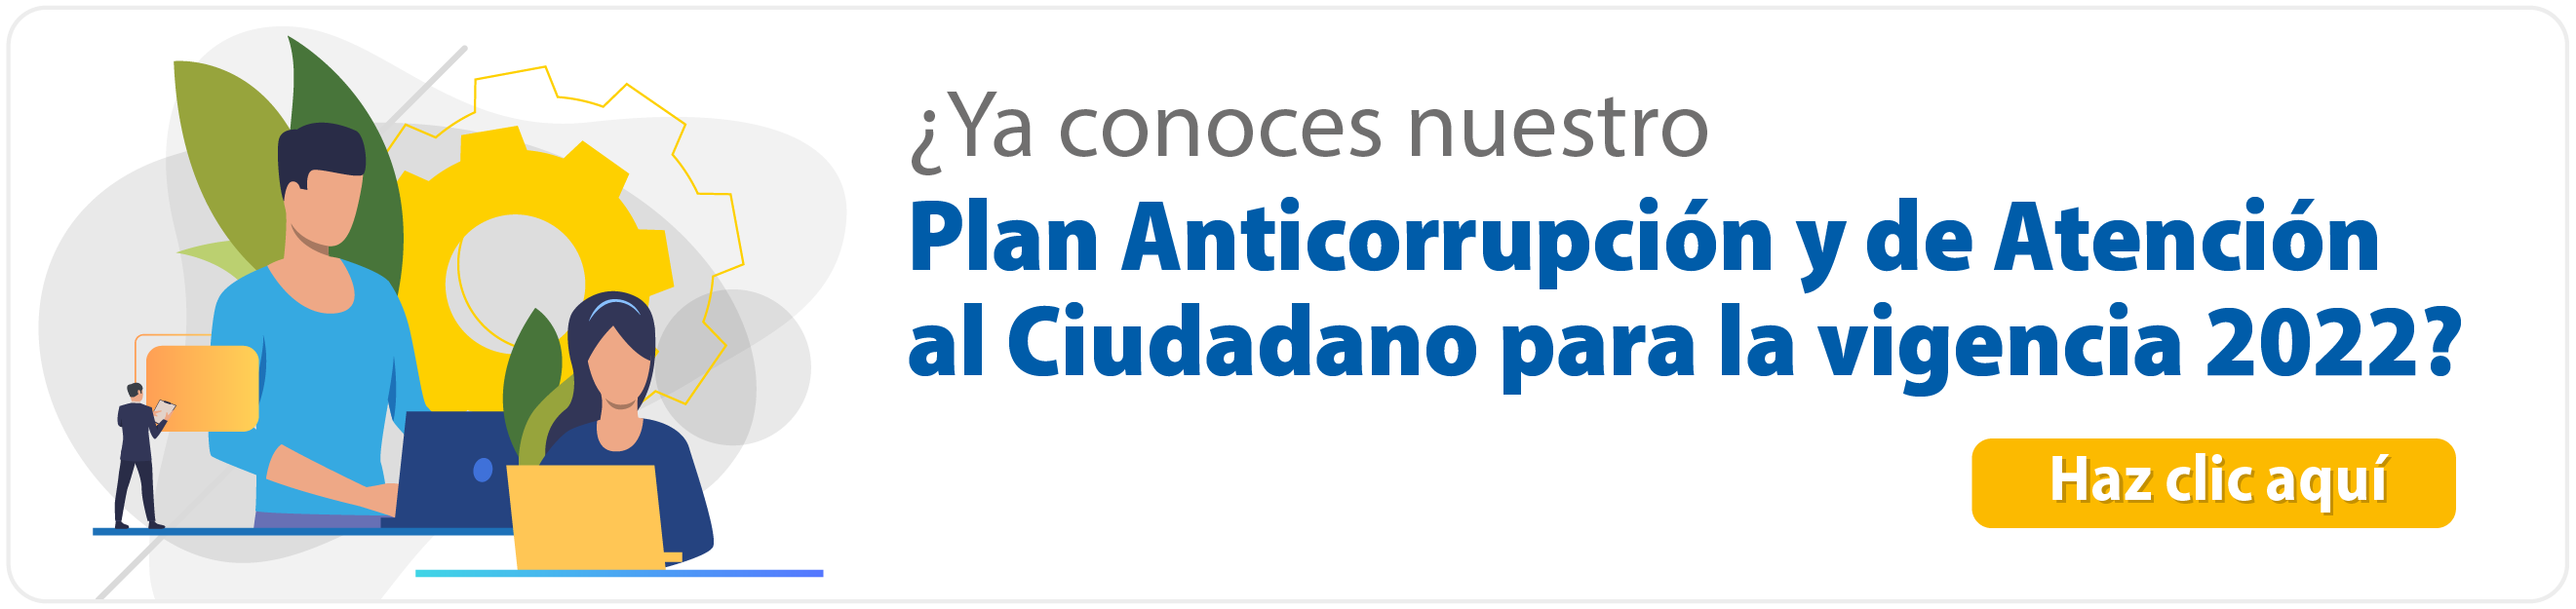 ¿Ya conoces nuestro Plan Anticorrupción y de Atención al Ciudadano para la vigencia 2022?